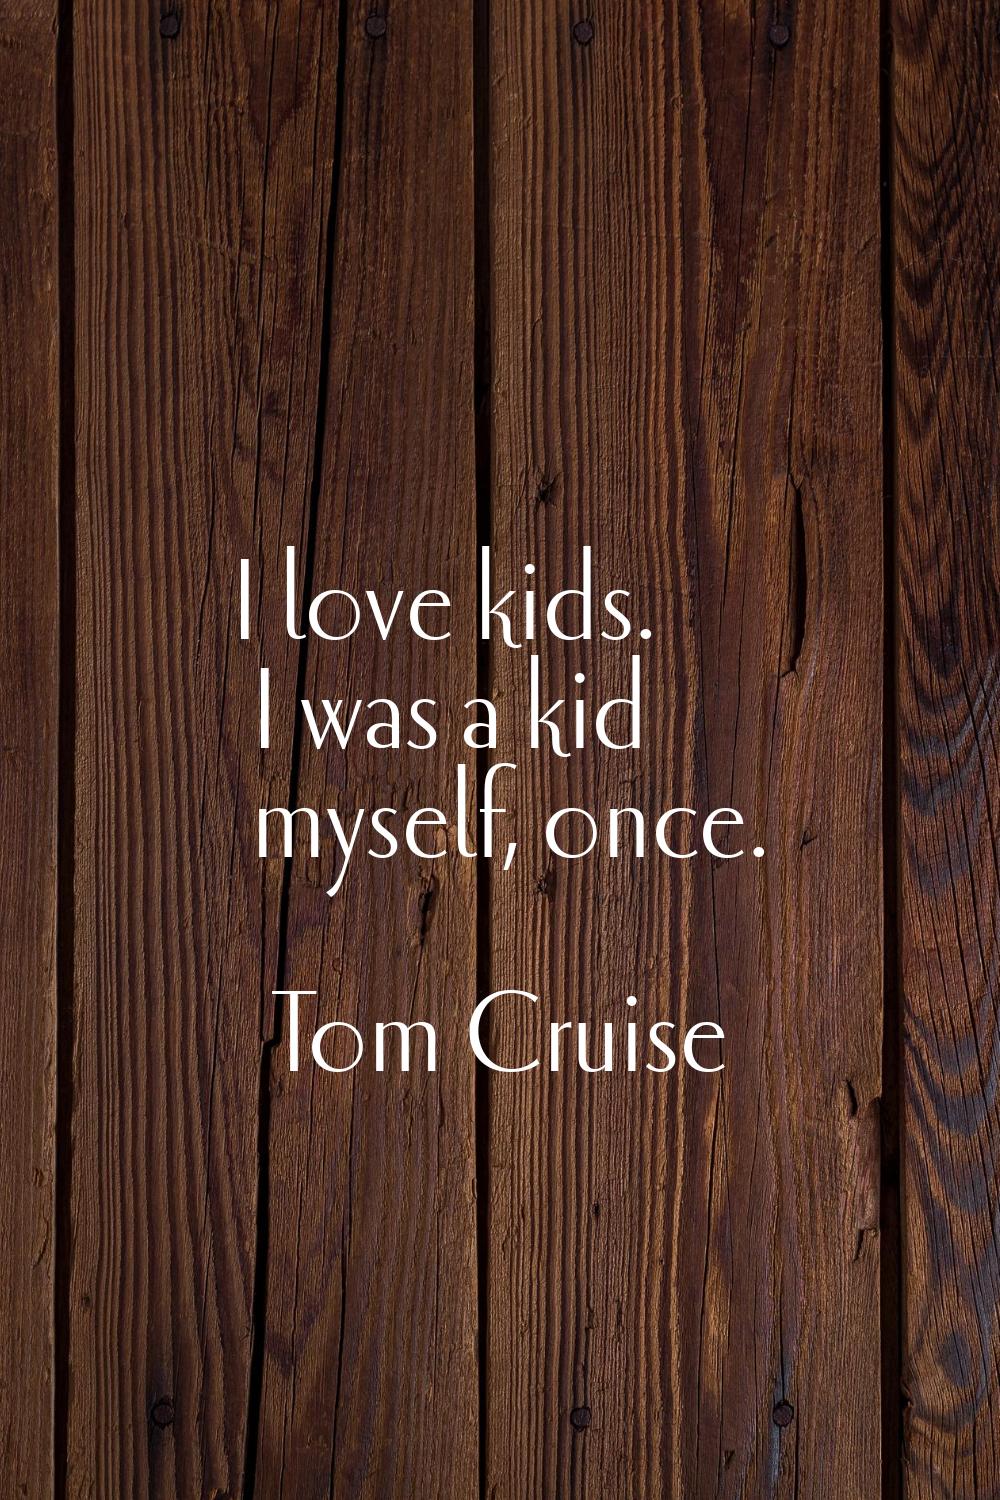 I love kids. I was a kid myself, once.